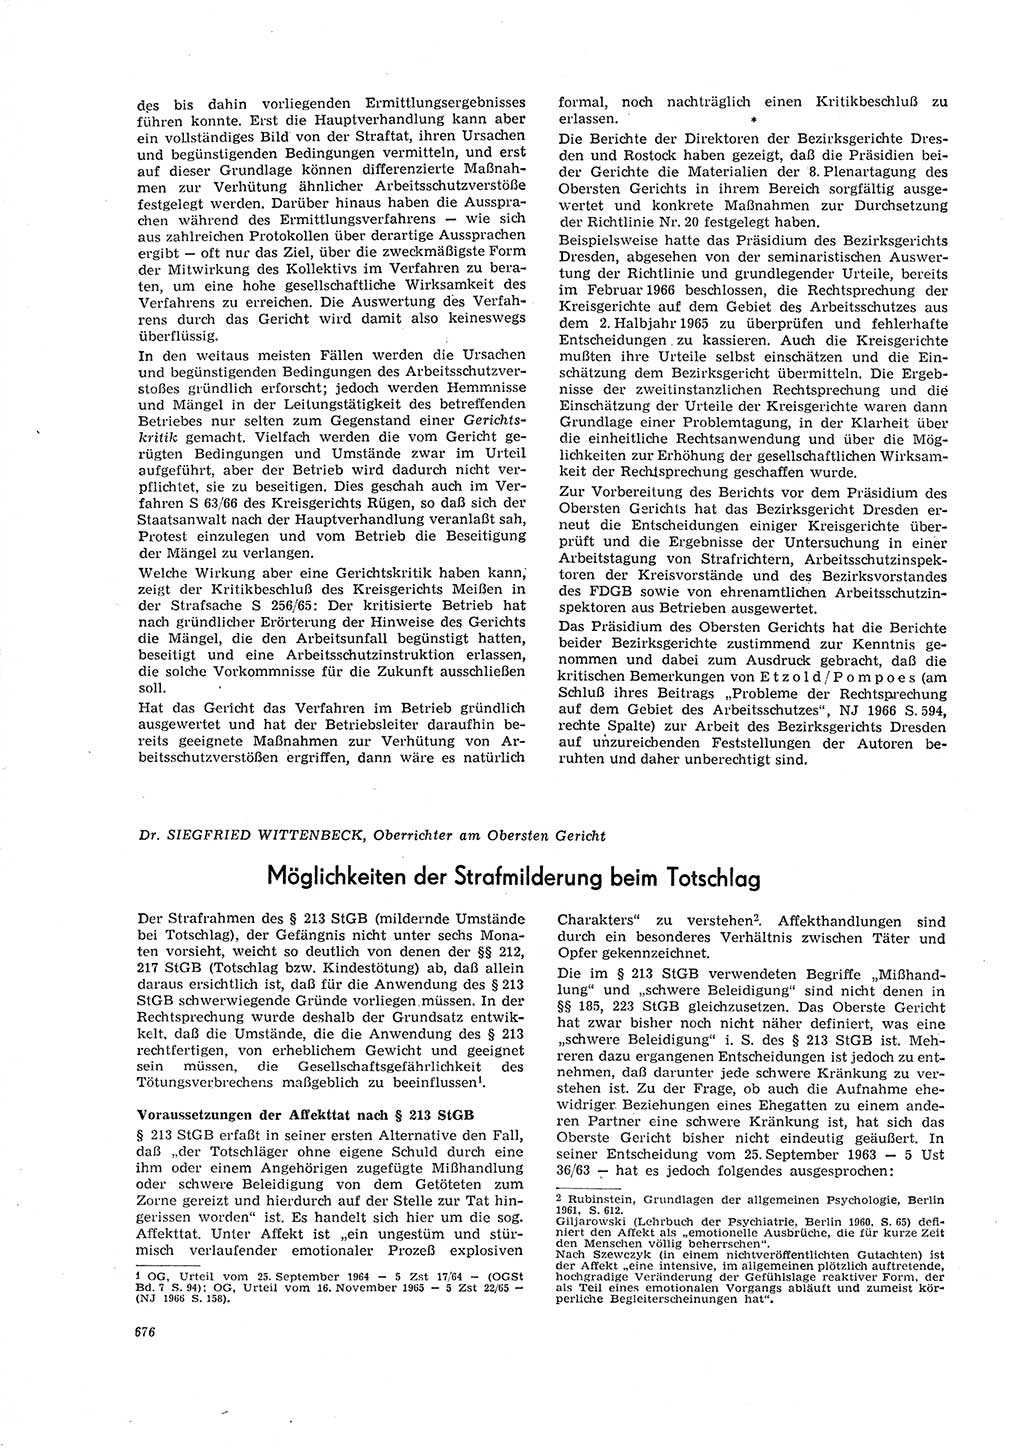 Neue Justiz (NJ), Zeitschrift für Recht und Rechtswissenschaft [Deutsche Demokratische Republik (DDR)], 20. Jahrgang 1966, Seite 676 (NJ DDR 1966, S. 676)